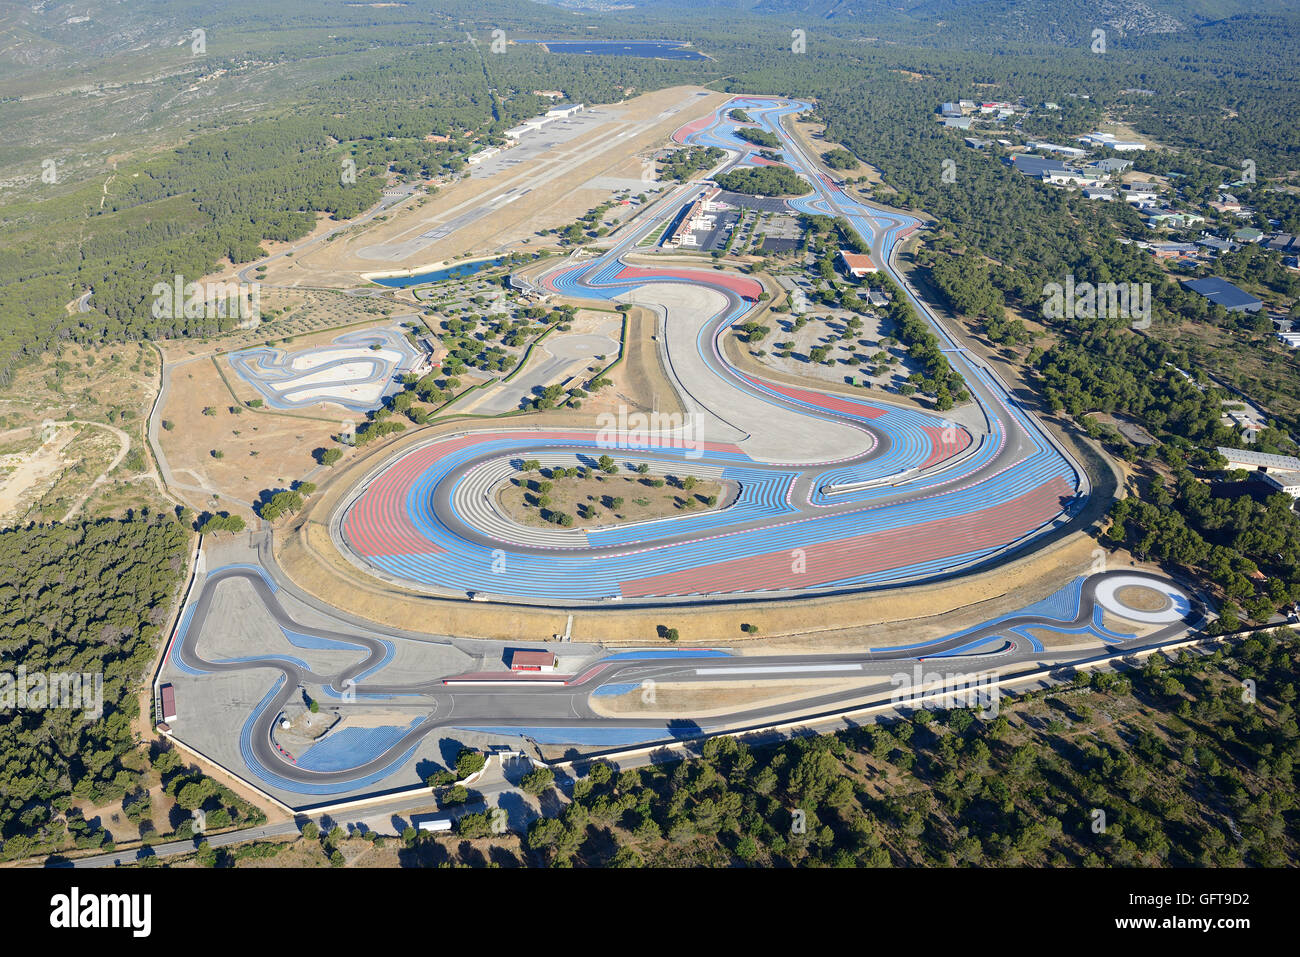 VUE AÉRIENNE.Le circuit du Castellet, également appelé circuit Paul Ricard, avec ses zones de run-off bleues et rouges.Le Castellet, Var, Provence, France. Banque D'Images